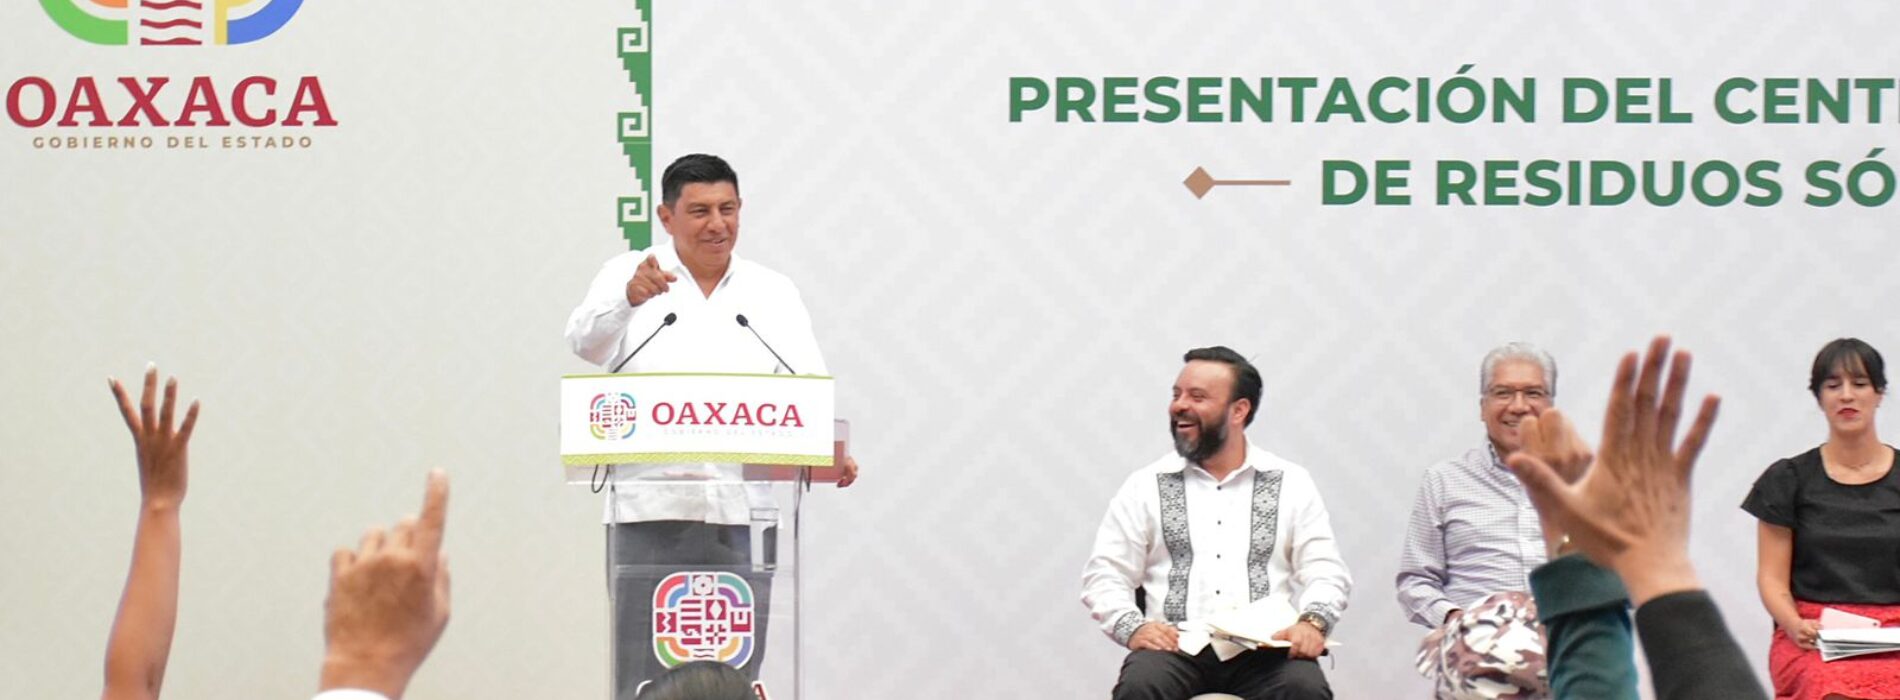 Con obras, el Presidente Andrés Manuel López Obrador ratifica su apoyo a Oaxaca: Gobernador Salomón Jara